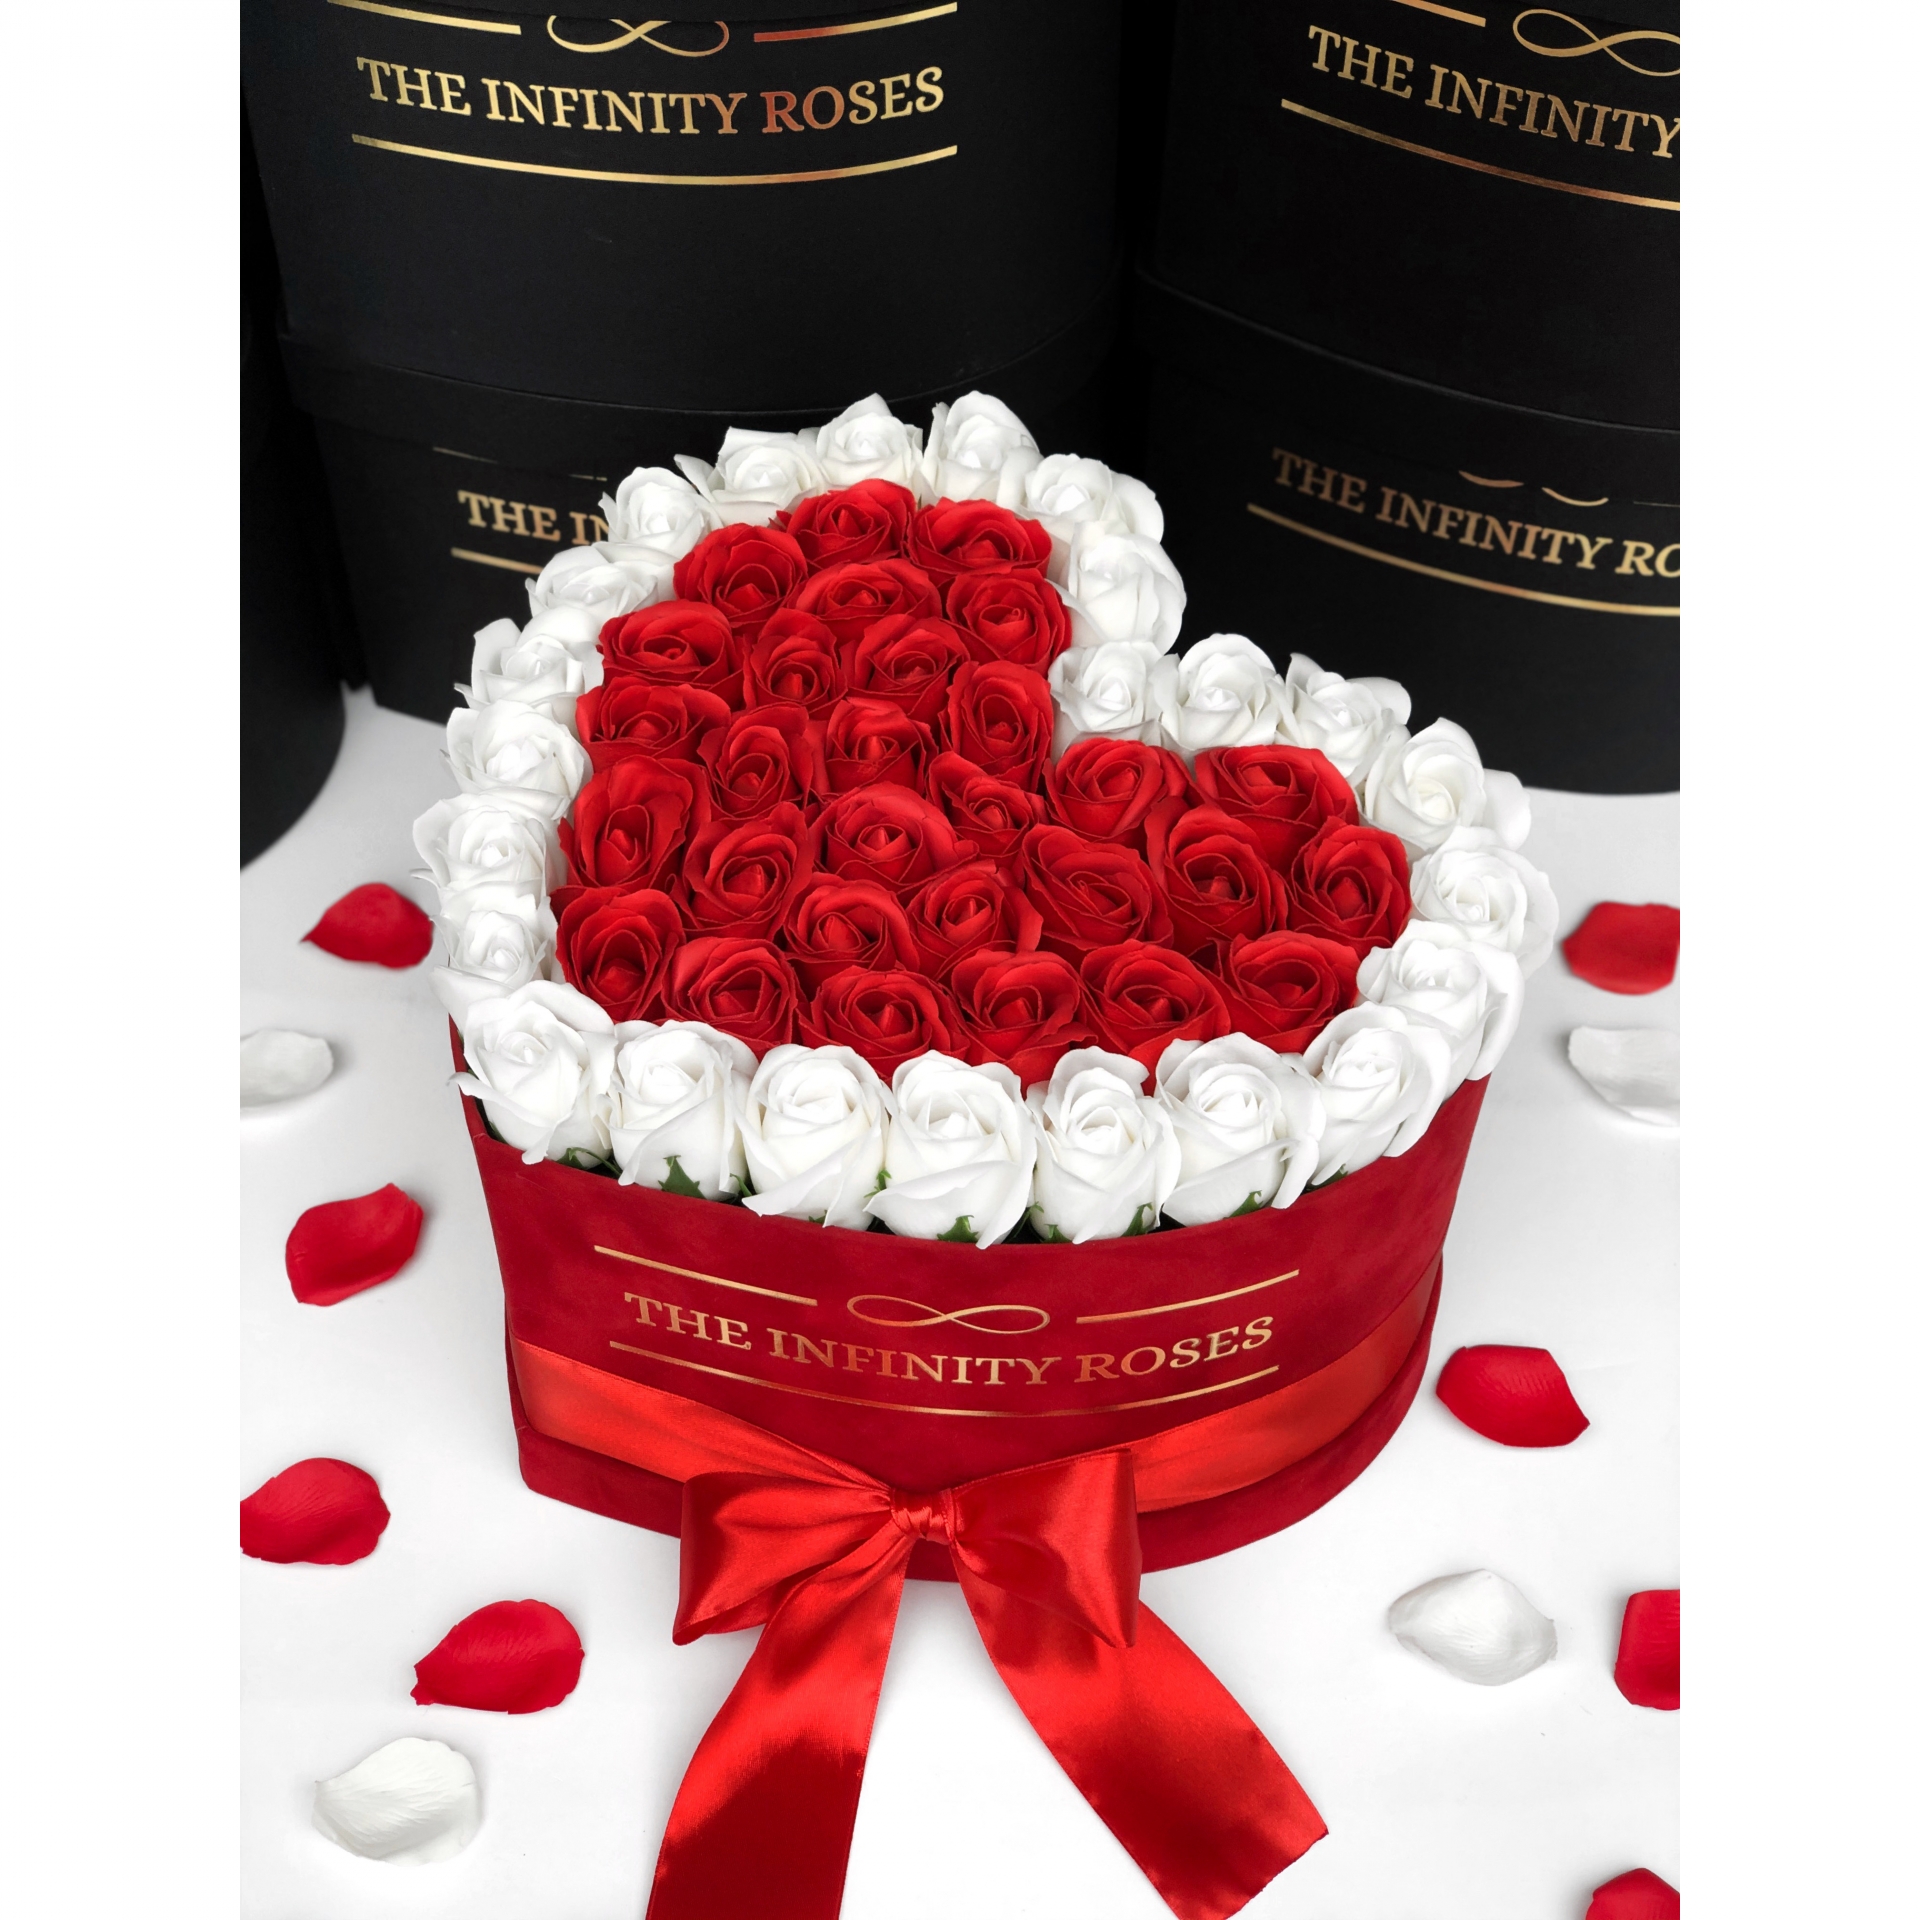 Cutie de catifea rosie inima cu 47-49 de trandafiri rosii si albi